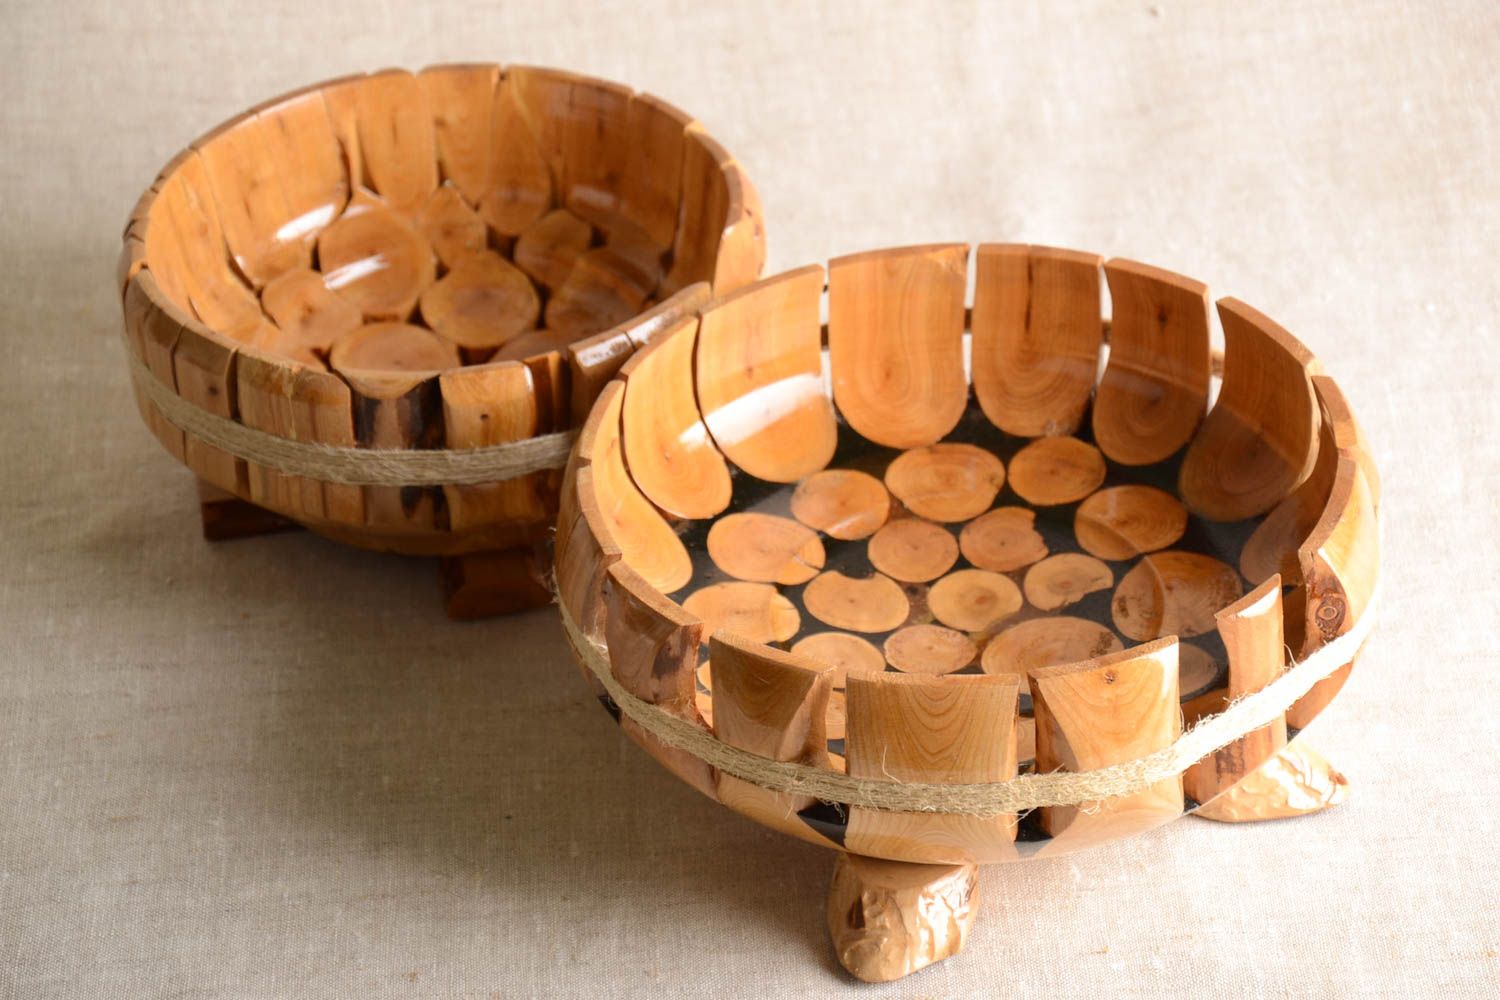 2 Bonbonnières fait main Vaisselle décorative en bois Cadeau original écolo photo 1